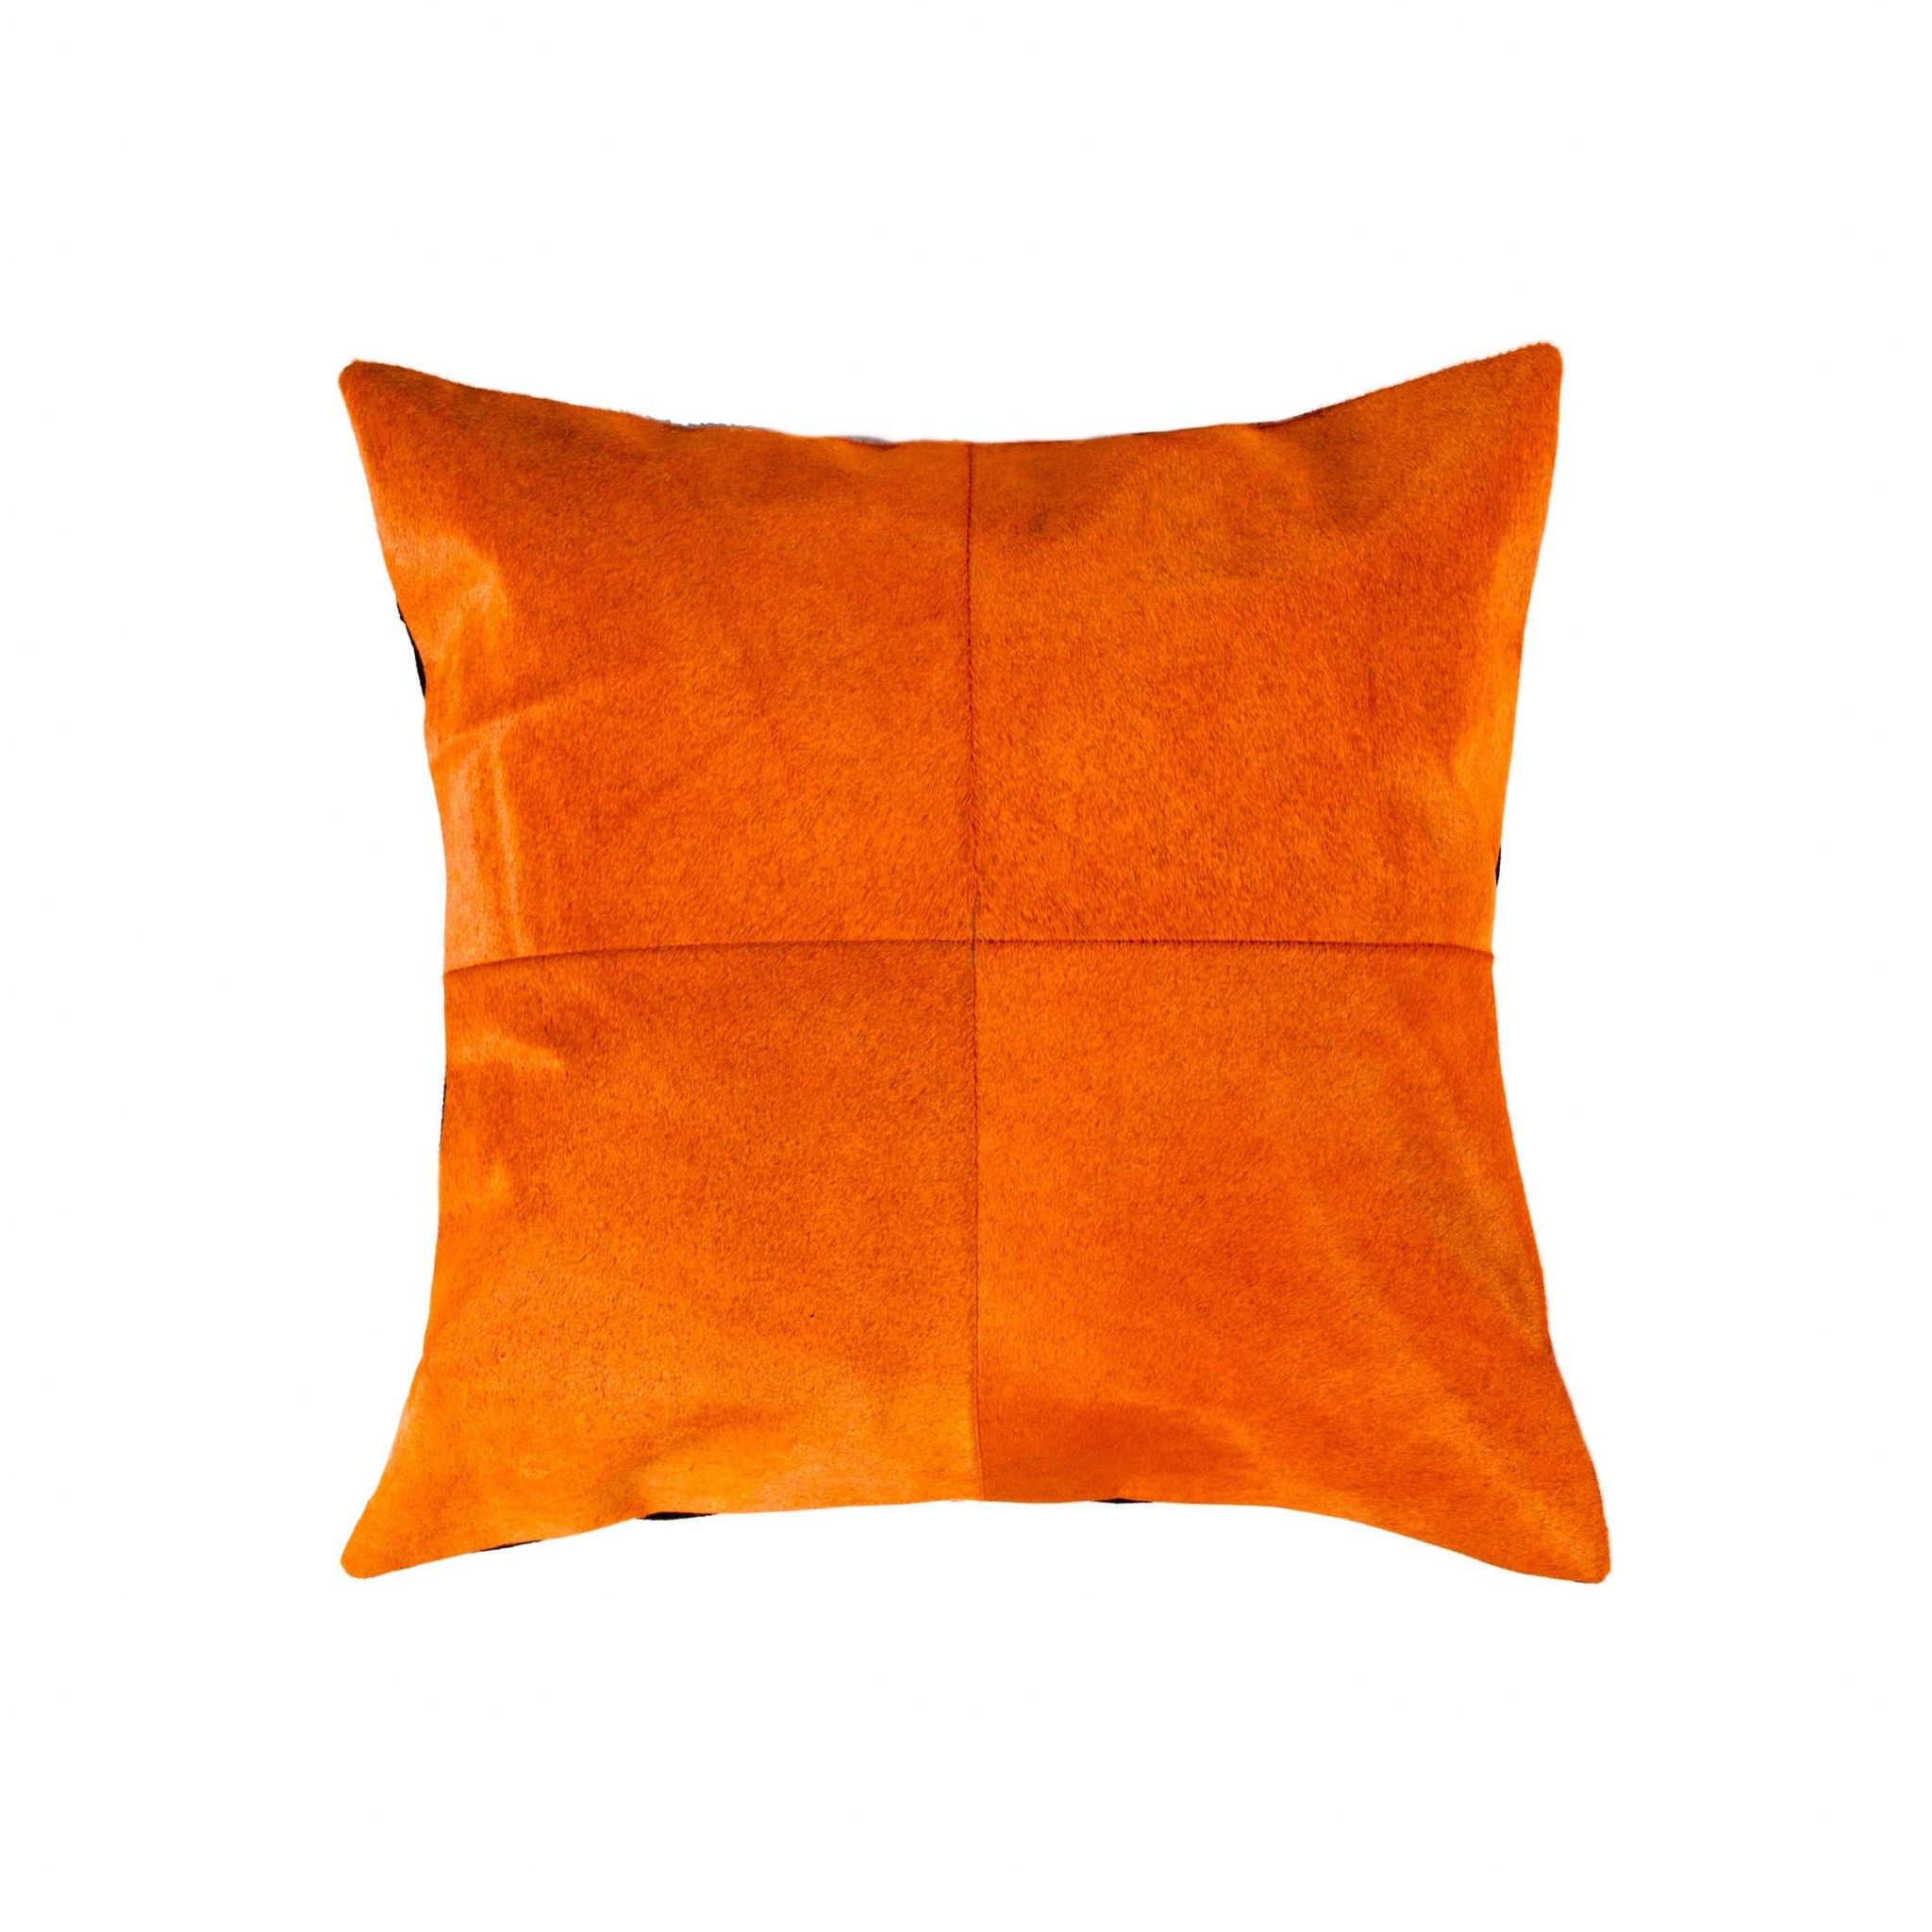 18" x 18" x 5" Orange Quattro - Pillow